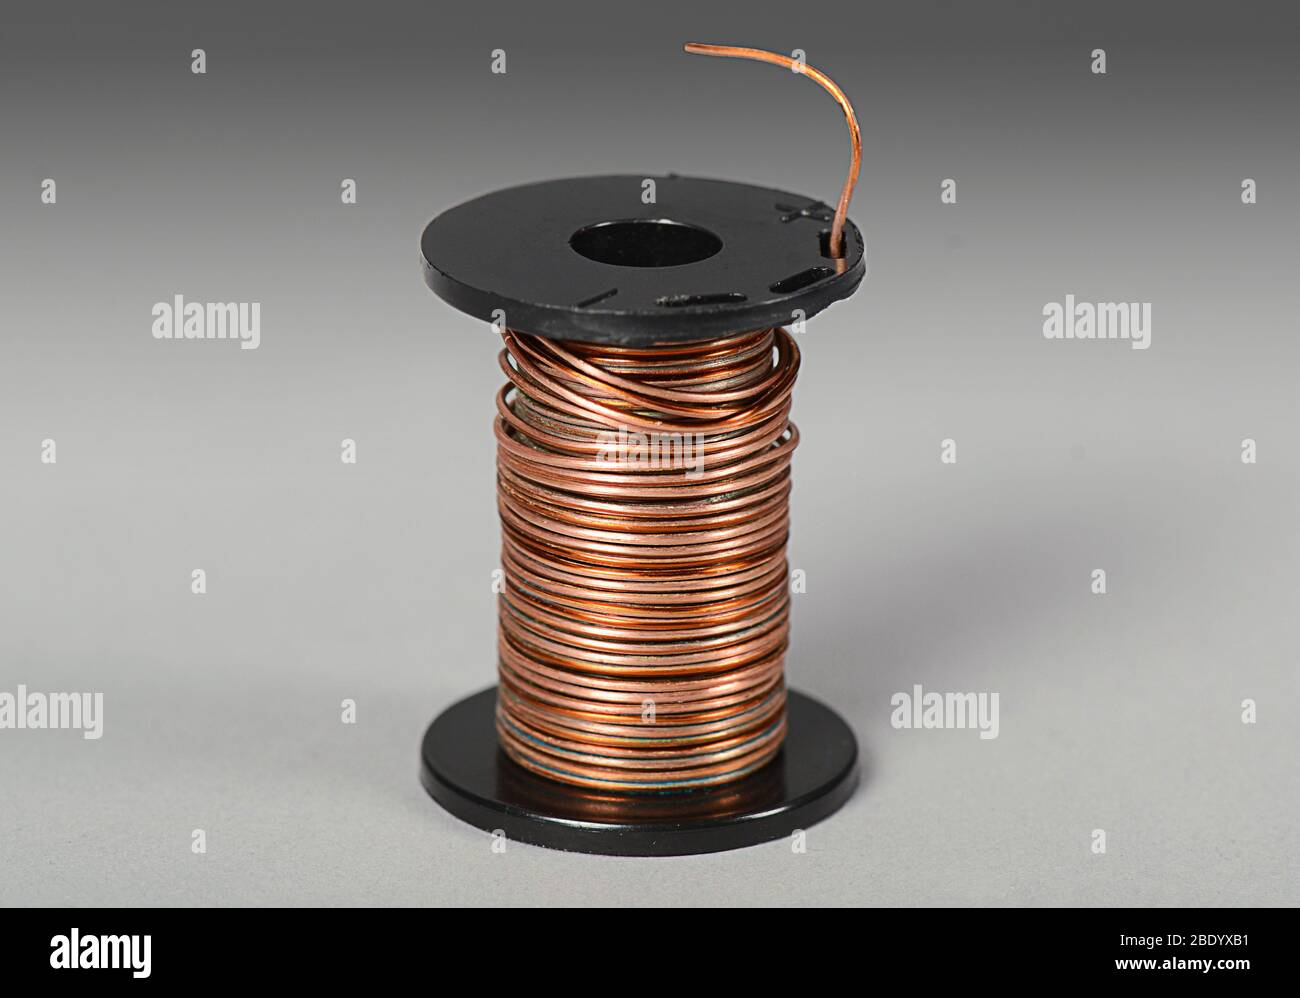 Spool of Copper Wire Stock Photo